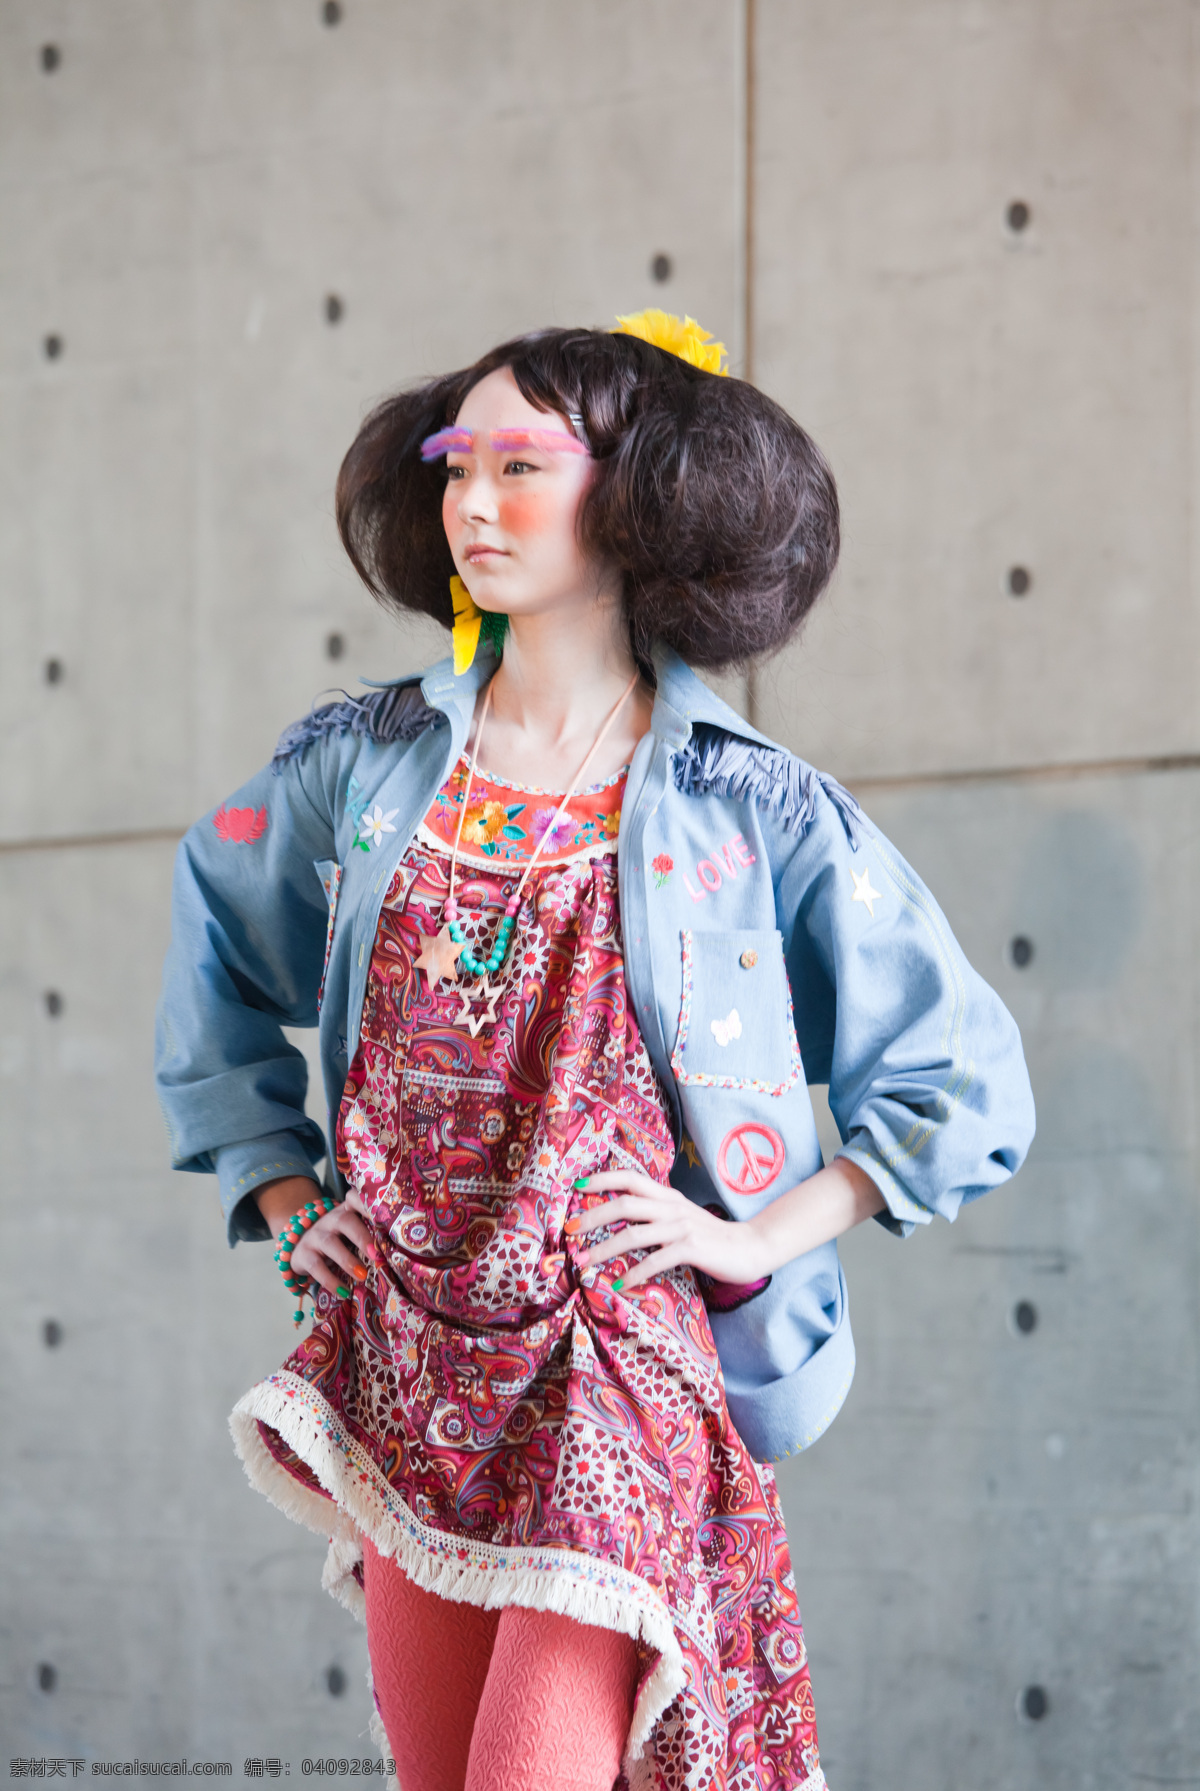 台湾 实践大学 人物摄影 人物图库 台湾实践大学 大学生模特 大学生 服装设计 展 其他服装素材